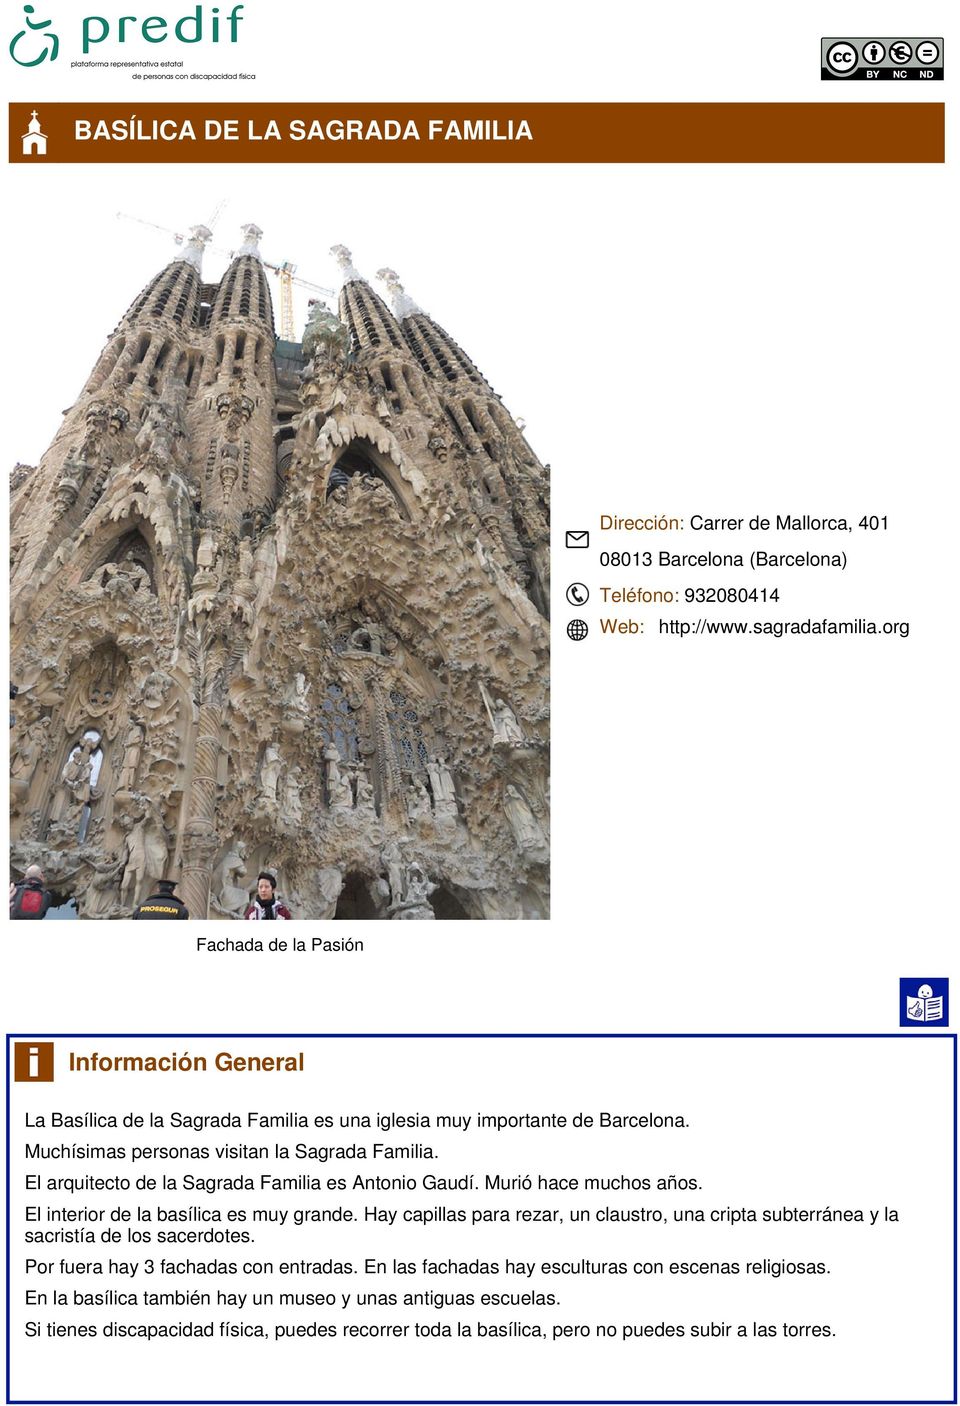 El arquitecto de la Sagrada Familia es Antonio Gaudí. Murió hace muchos años. El interior de la basílica es muy grande.